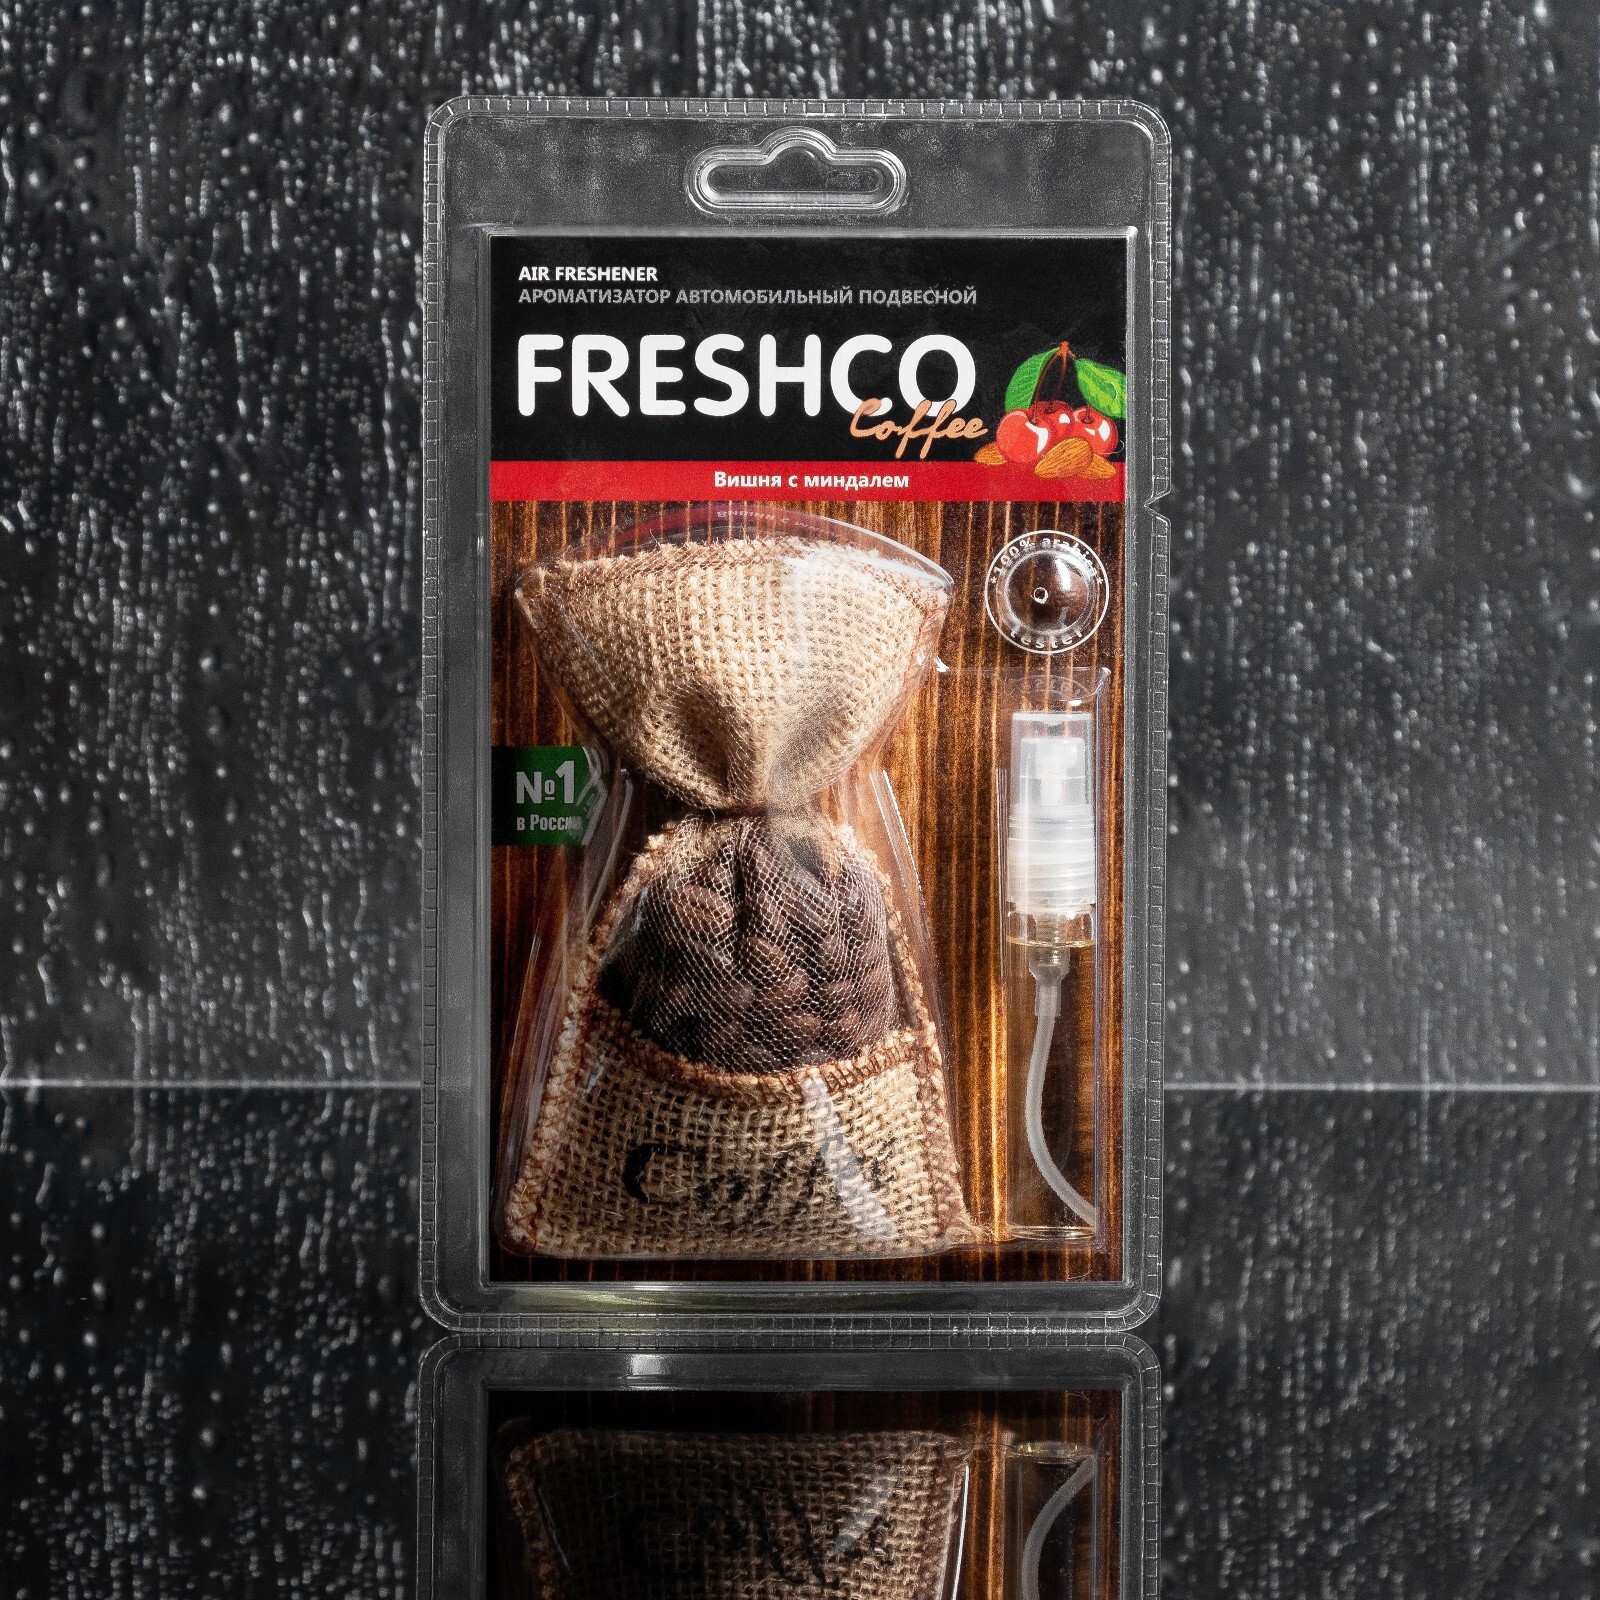 Мандарин 36. Ароматизатор подвесной мешочек "Freshсo Coffee". Ароматизатор подвесной мешочек "Freshсo Coffee" вишня с миндалем (CF-03). Ароматизатор подвесной мешочек "Freshсo Coffee" шоколадный мандарин. Вр03 ароматизатор мешочек.